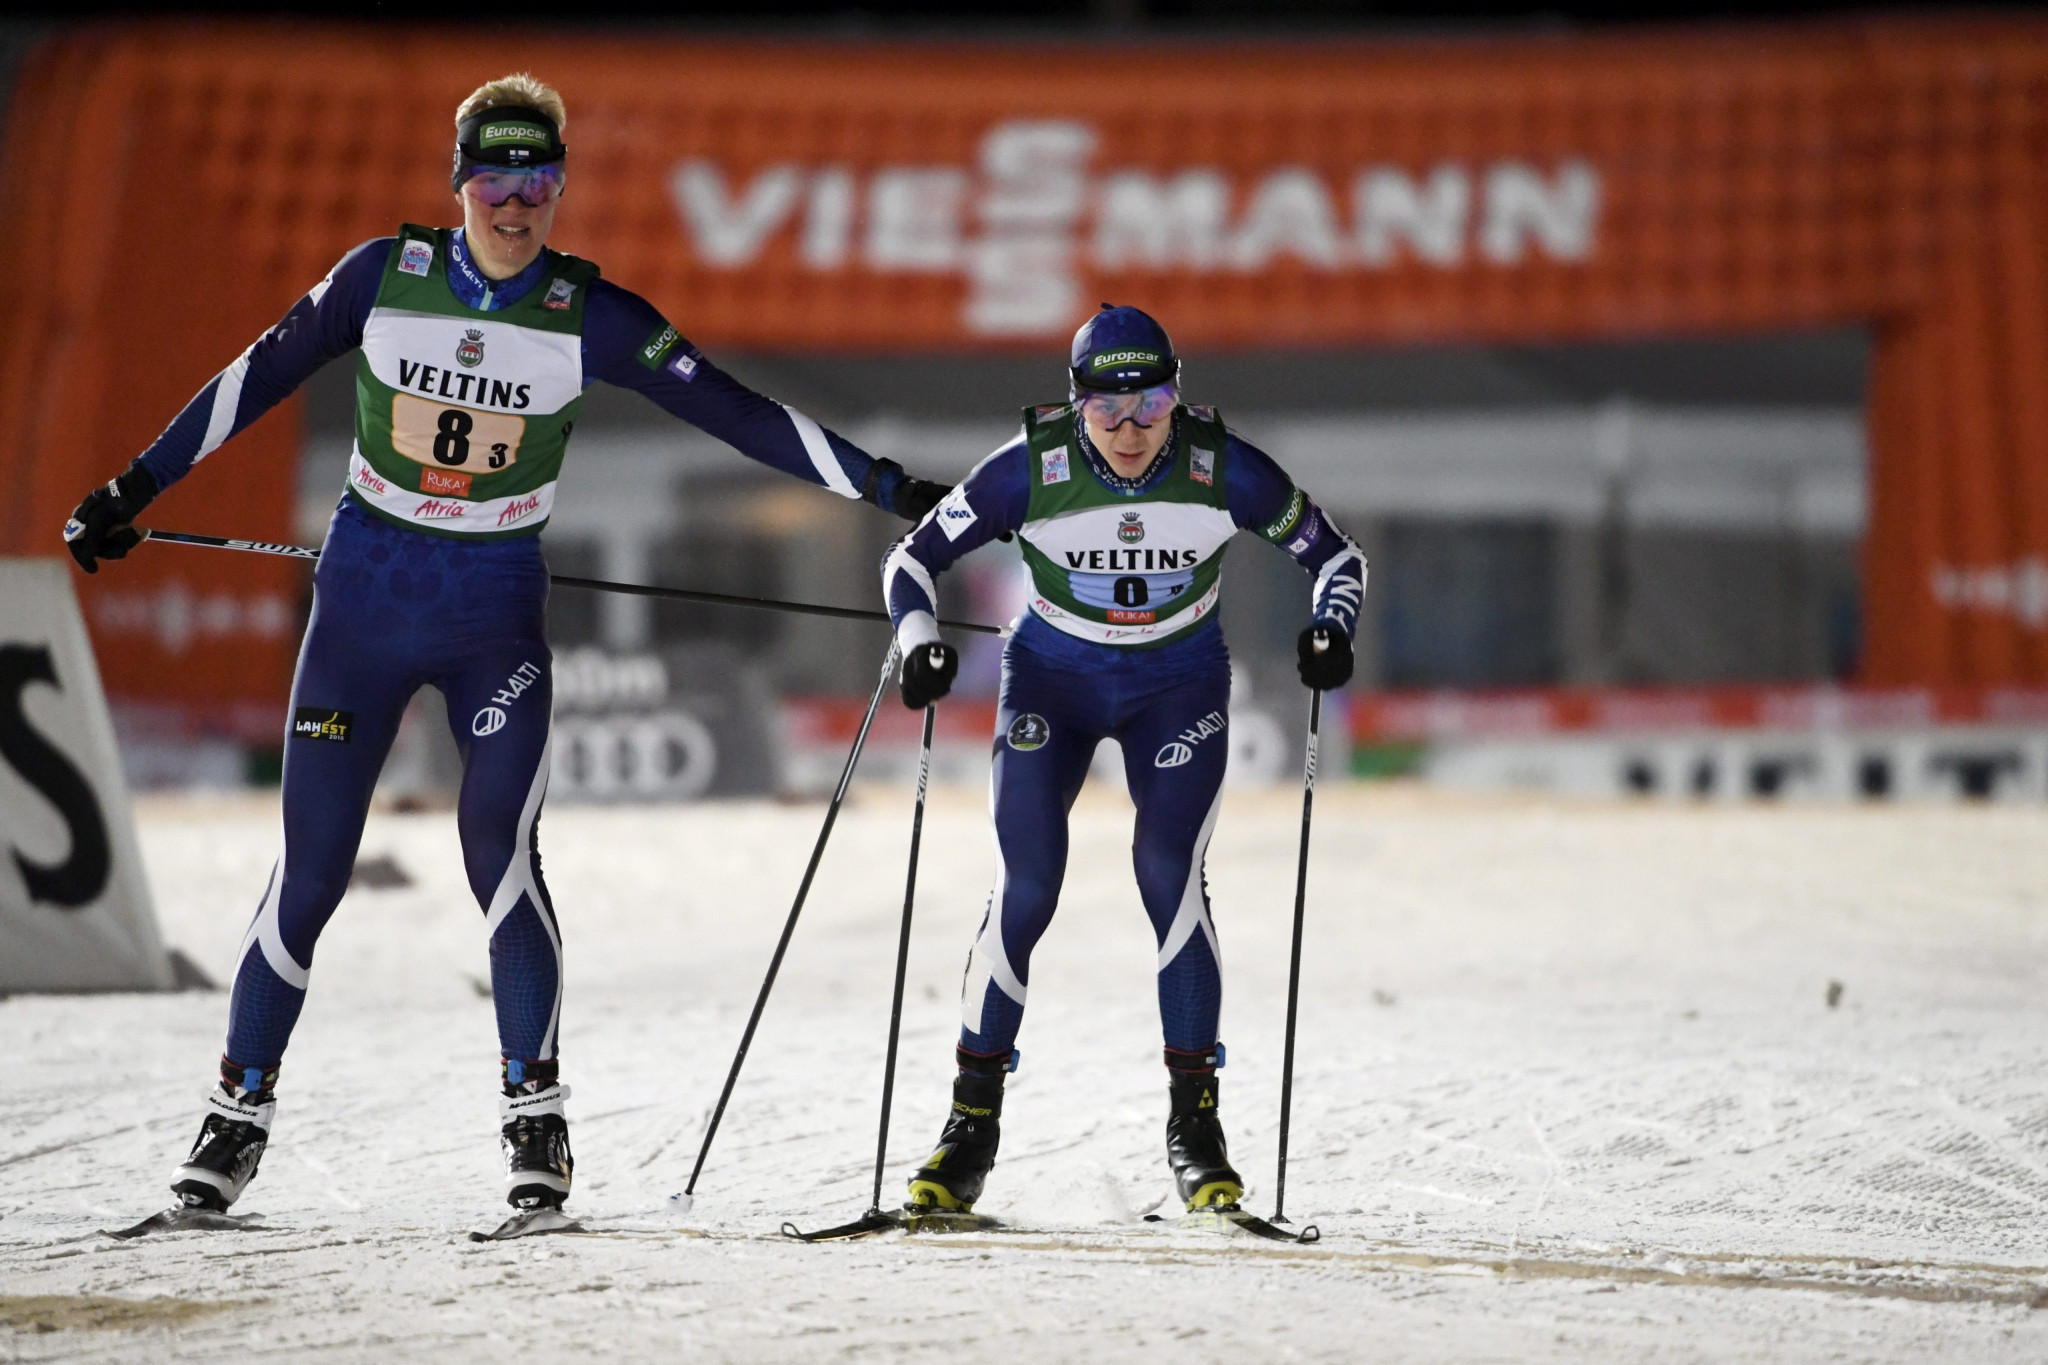 Ilkka Herola and Eero Hirvonen won the event by just 0.2 seconds from Norway's Espen Bjoernstad and Jørgen Graabak ©Getty Images